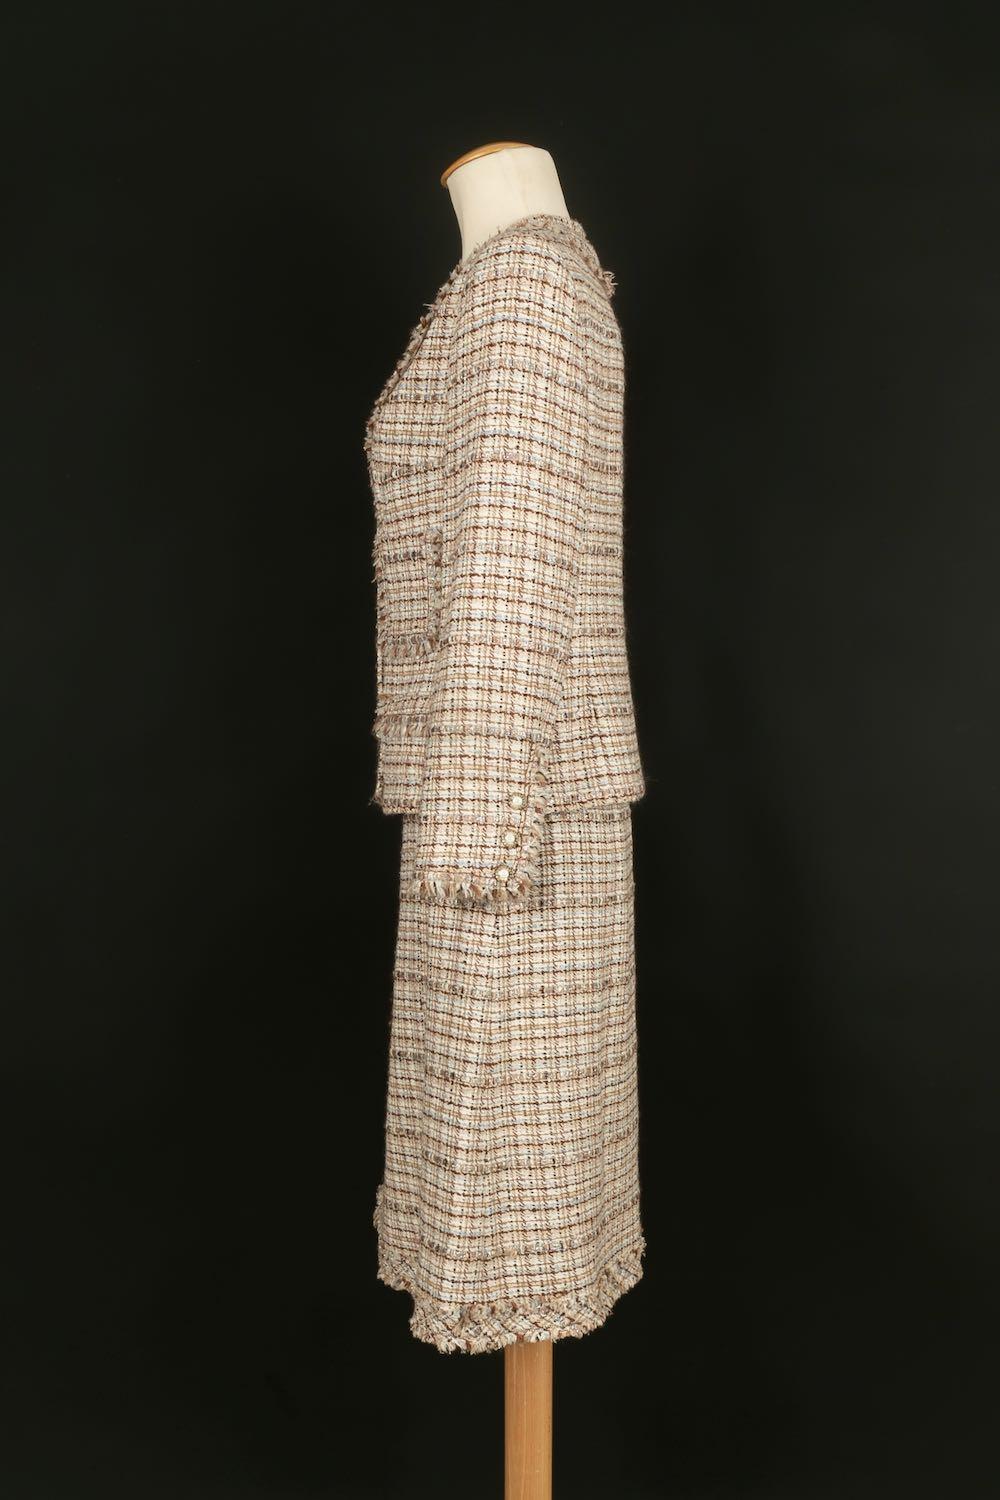 Chanel - Ensemble veste et jupe en tweed. Il n'y a pas de taille indiquée, il convient à un 36FR.

Informations complémentaires : 
Dimensions : Veste : Largeur des épaules : 42 cm, Poitrine : 48 cm, Longueur des manches : 55 cm 
Jupe : Taille : 36